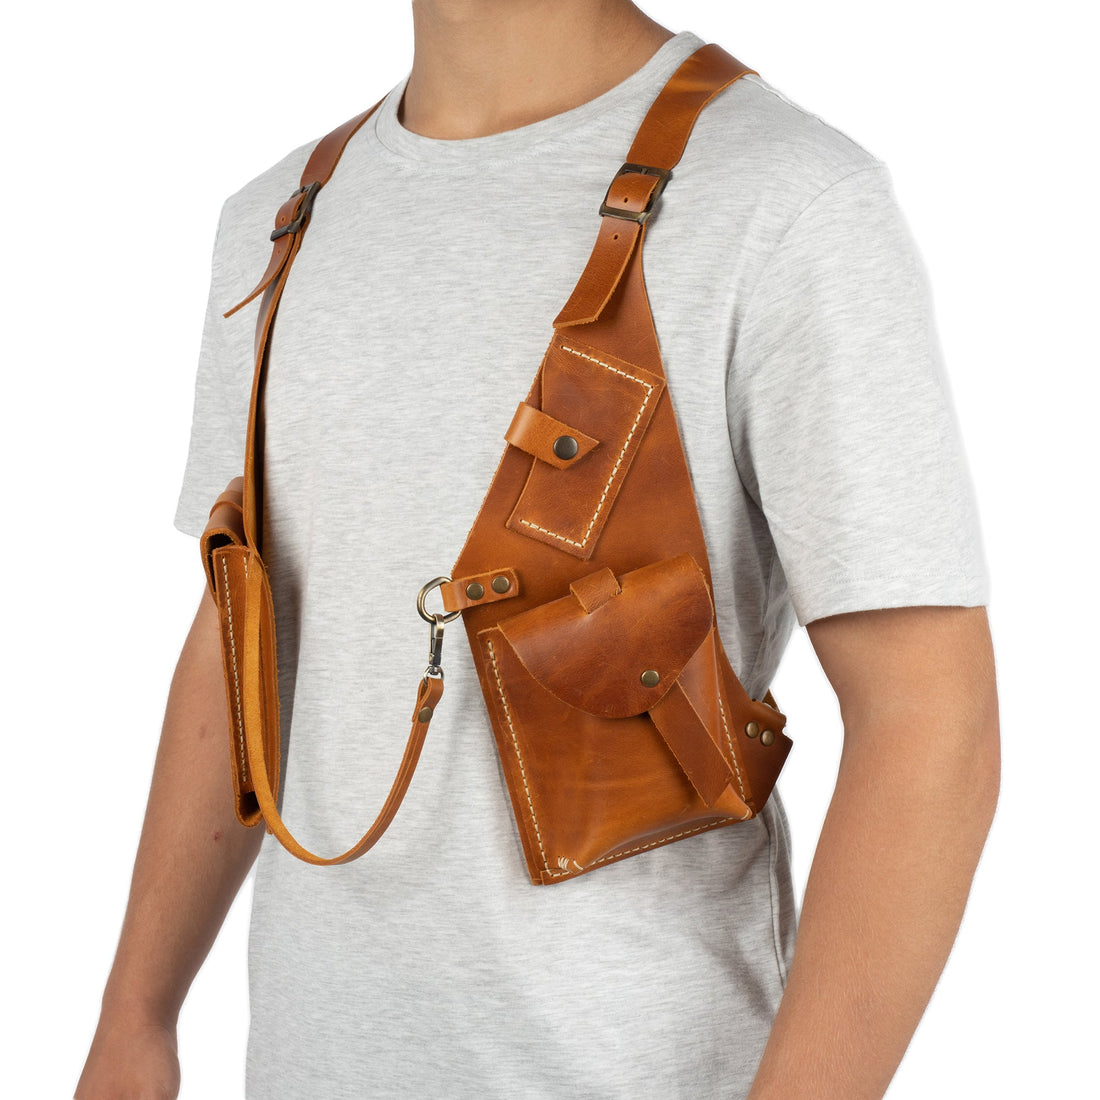 Regulus Tan Shoulder Leather Holster With Pocket - Zengoda Shop online from Artisan Brands